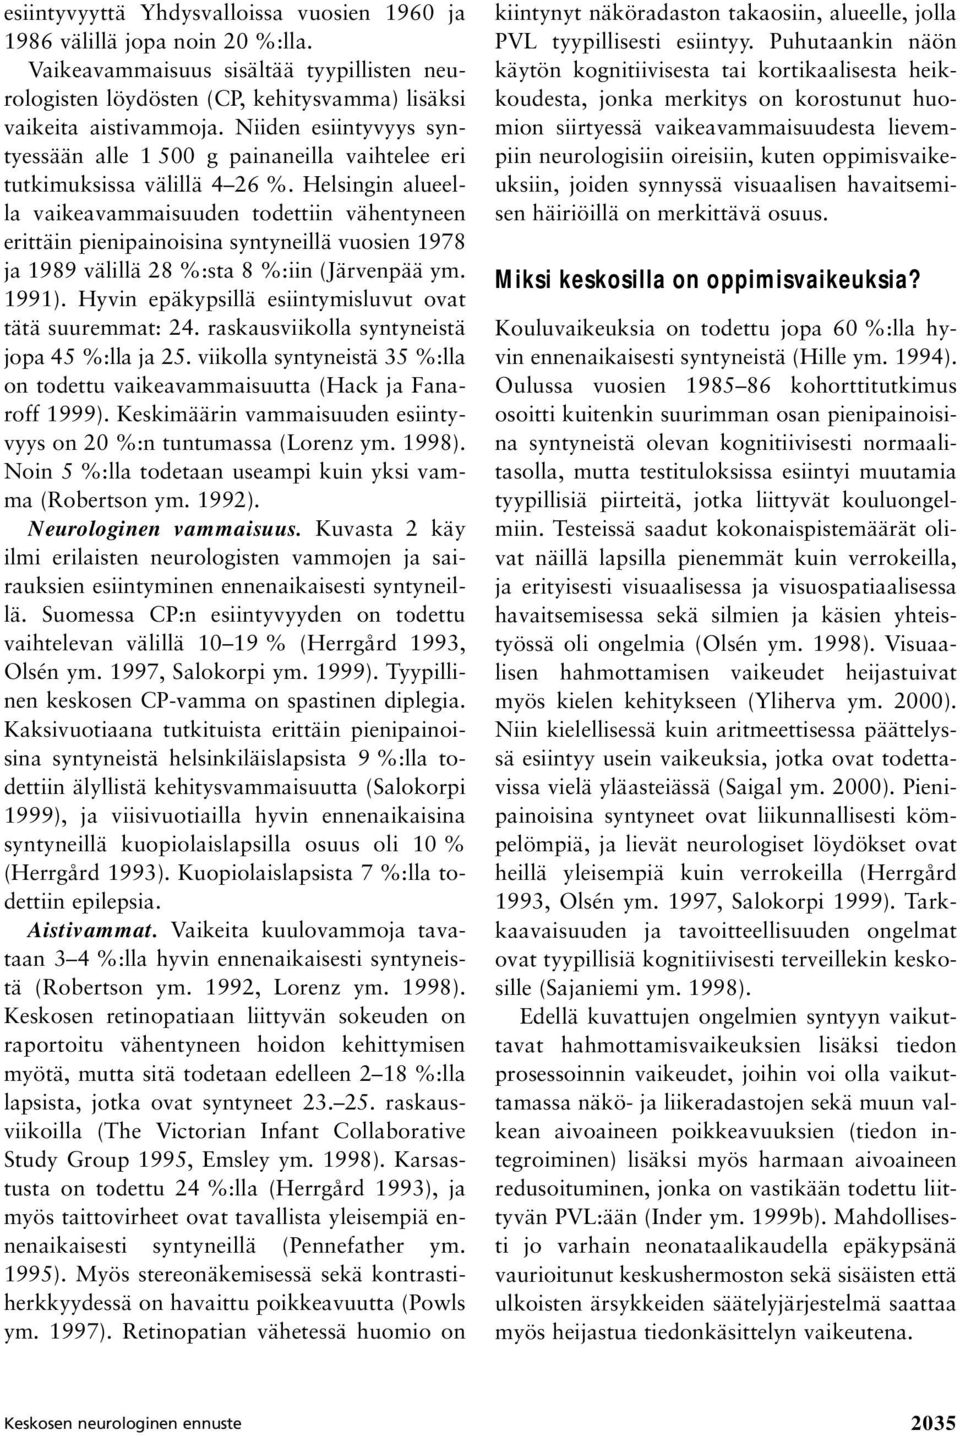 Helsingin alueella vaikeavammaisuuden todettiin vähentyneen erittäin pienipainoisina syntyneillä vuosien 1978 ja 1989 välillä 28 %:sta 8 %:iin (Järvenpää ym. 1991).